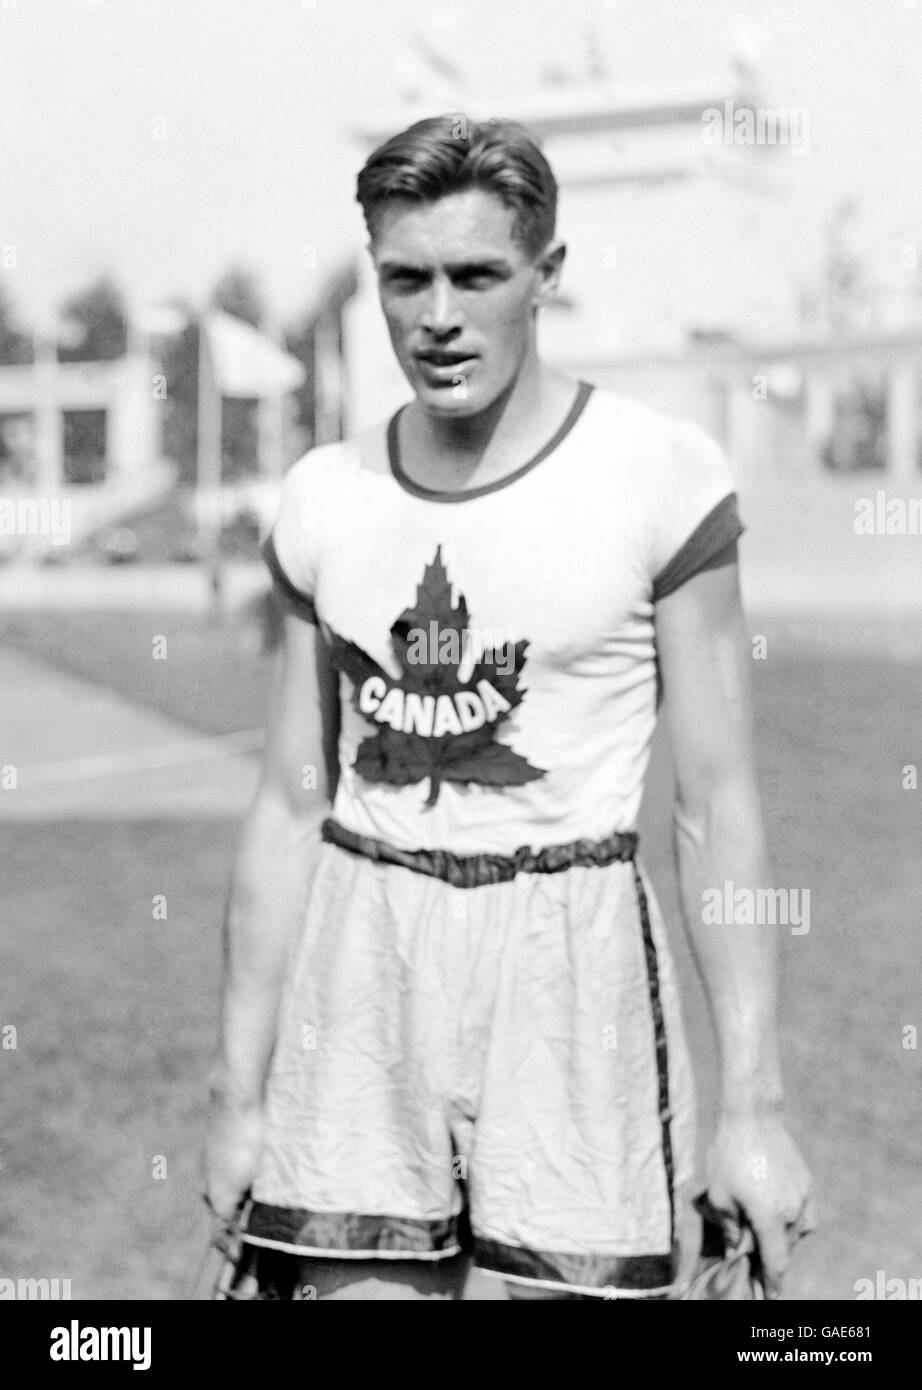 Earl Thomson aus Kanada, nachdem er die 110-Meter-Hürden gewonnen hatte. Stockfoto